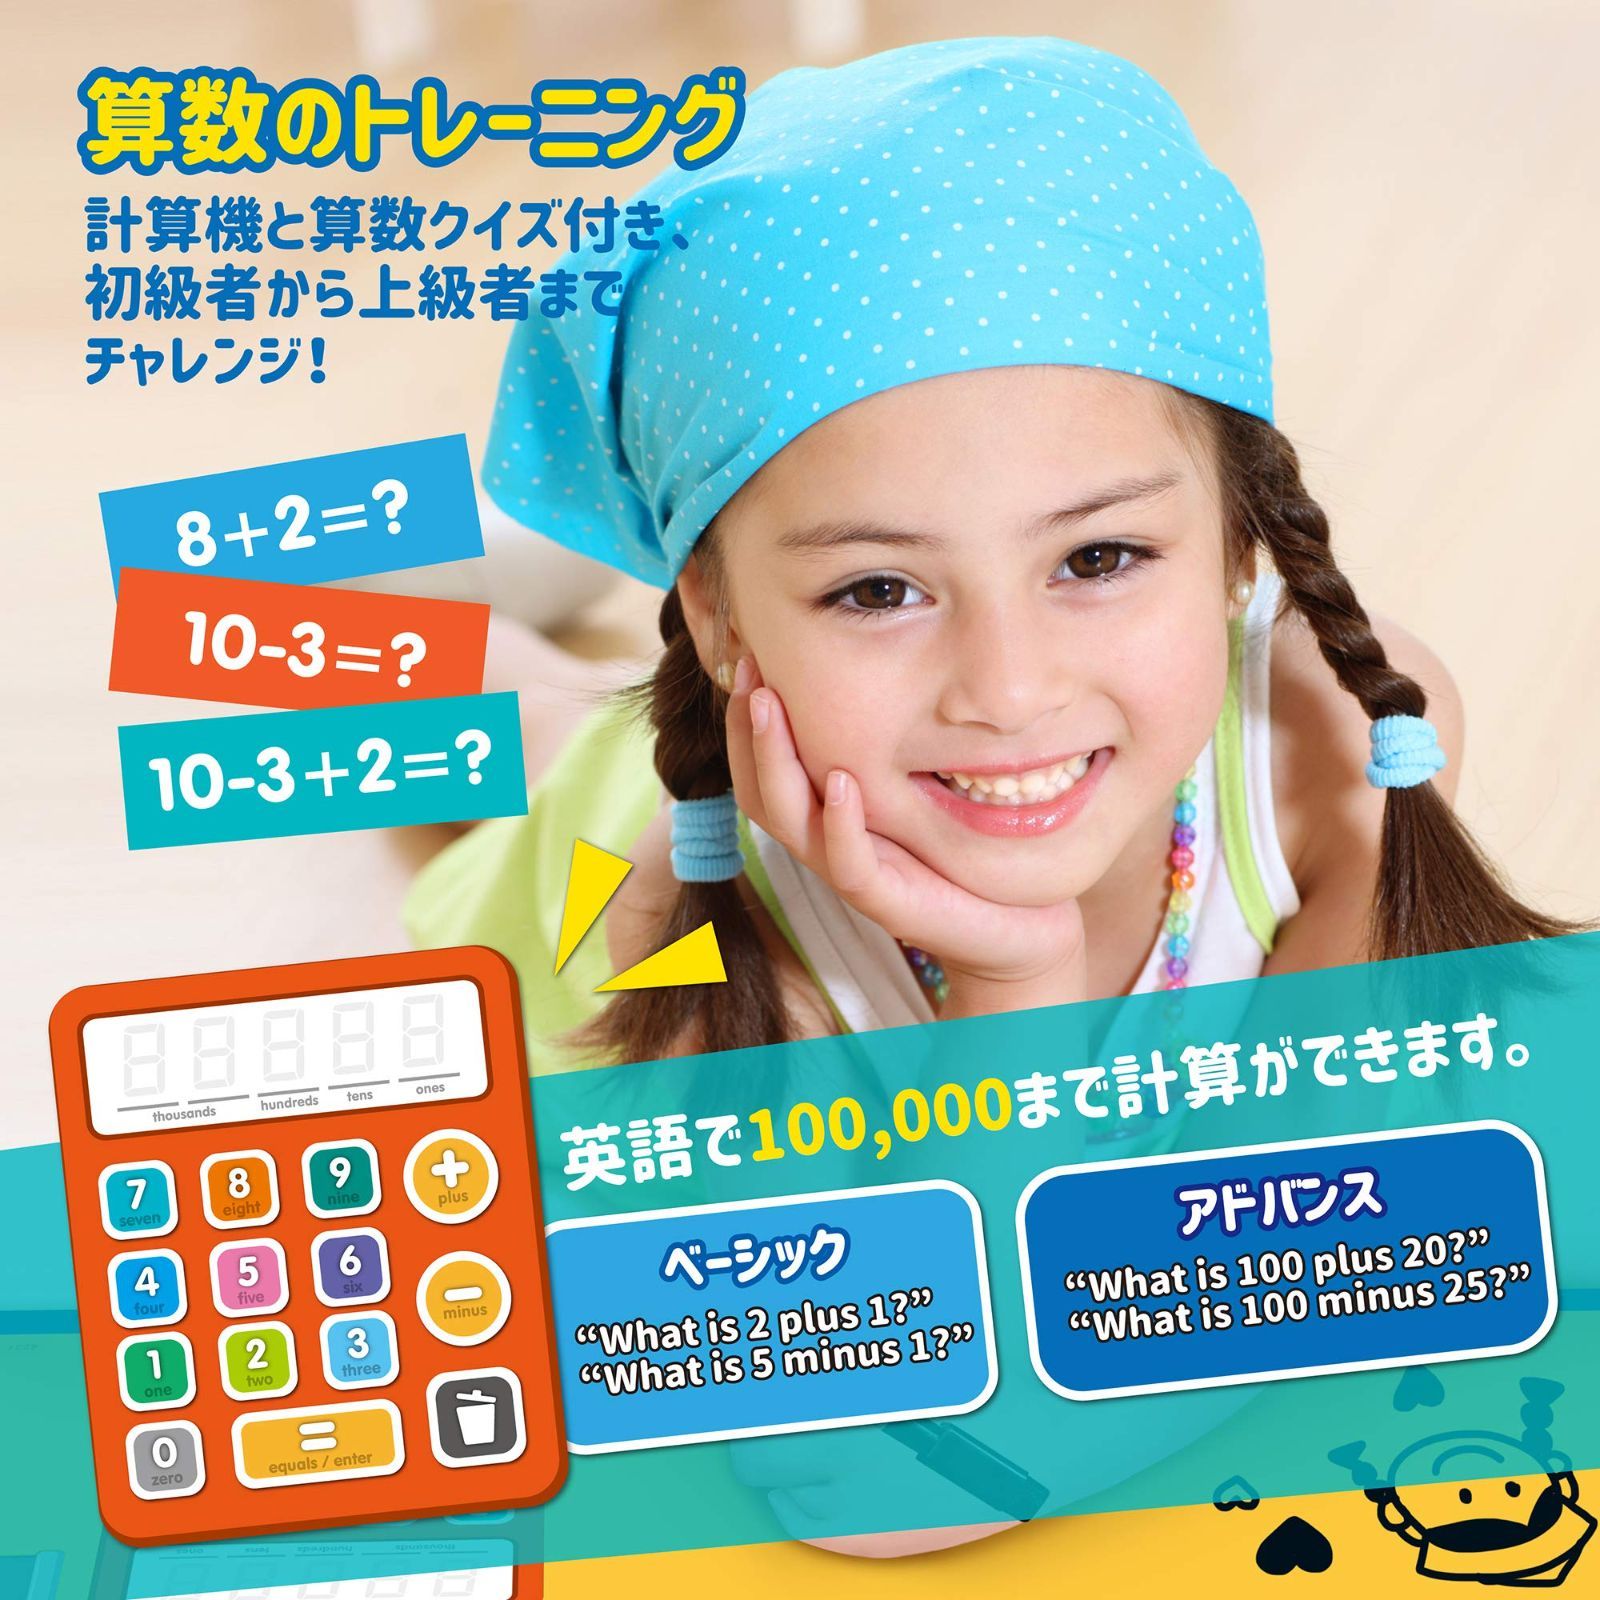 【特価商品】i-Poster: マイラーニングボード - 電子対話型おしゃべりポスター 3~6歳のお子さま用英語知育玩具